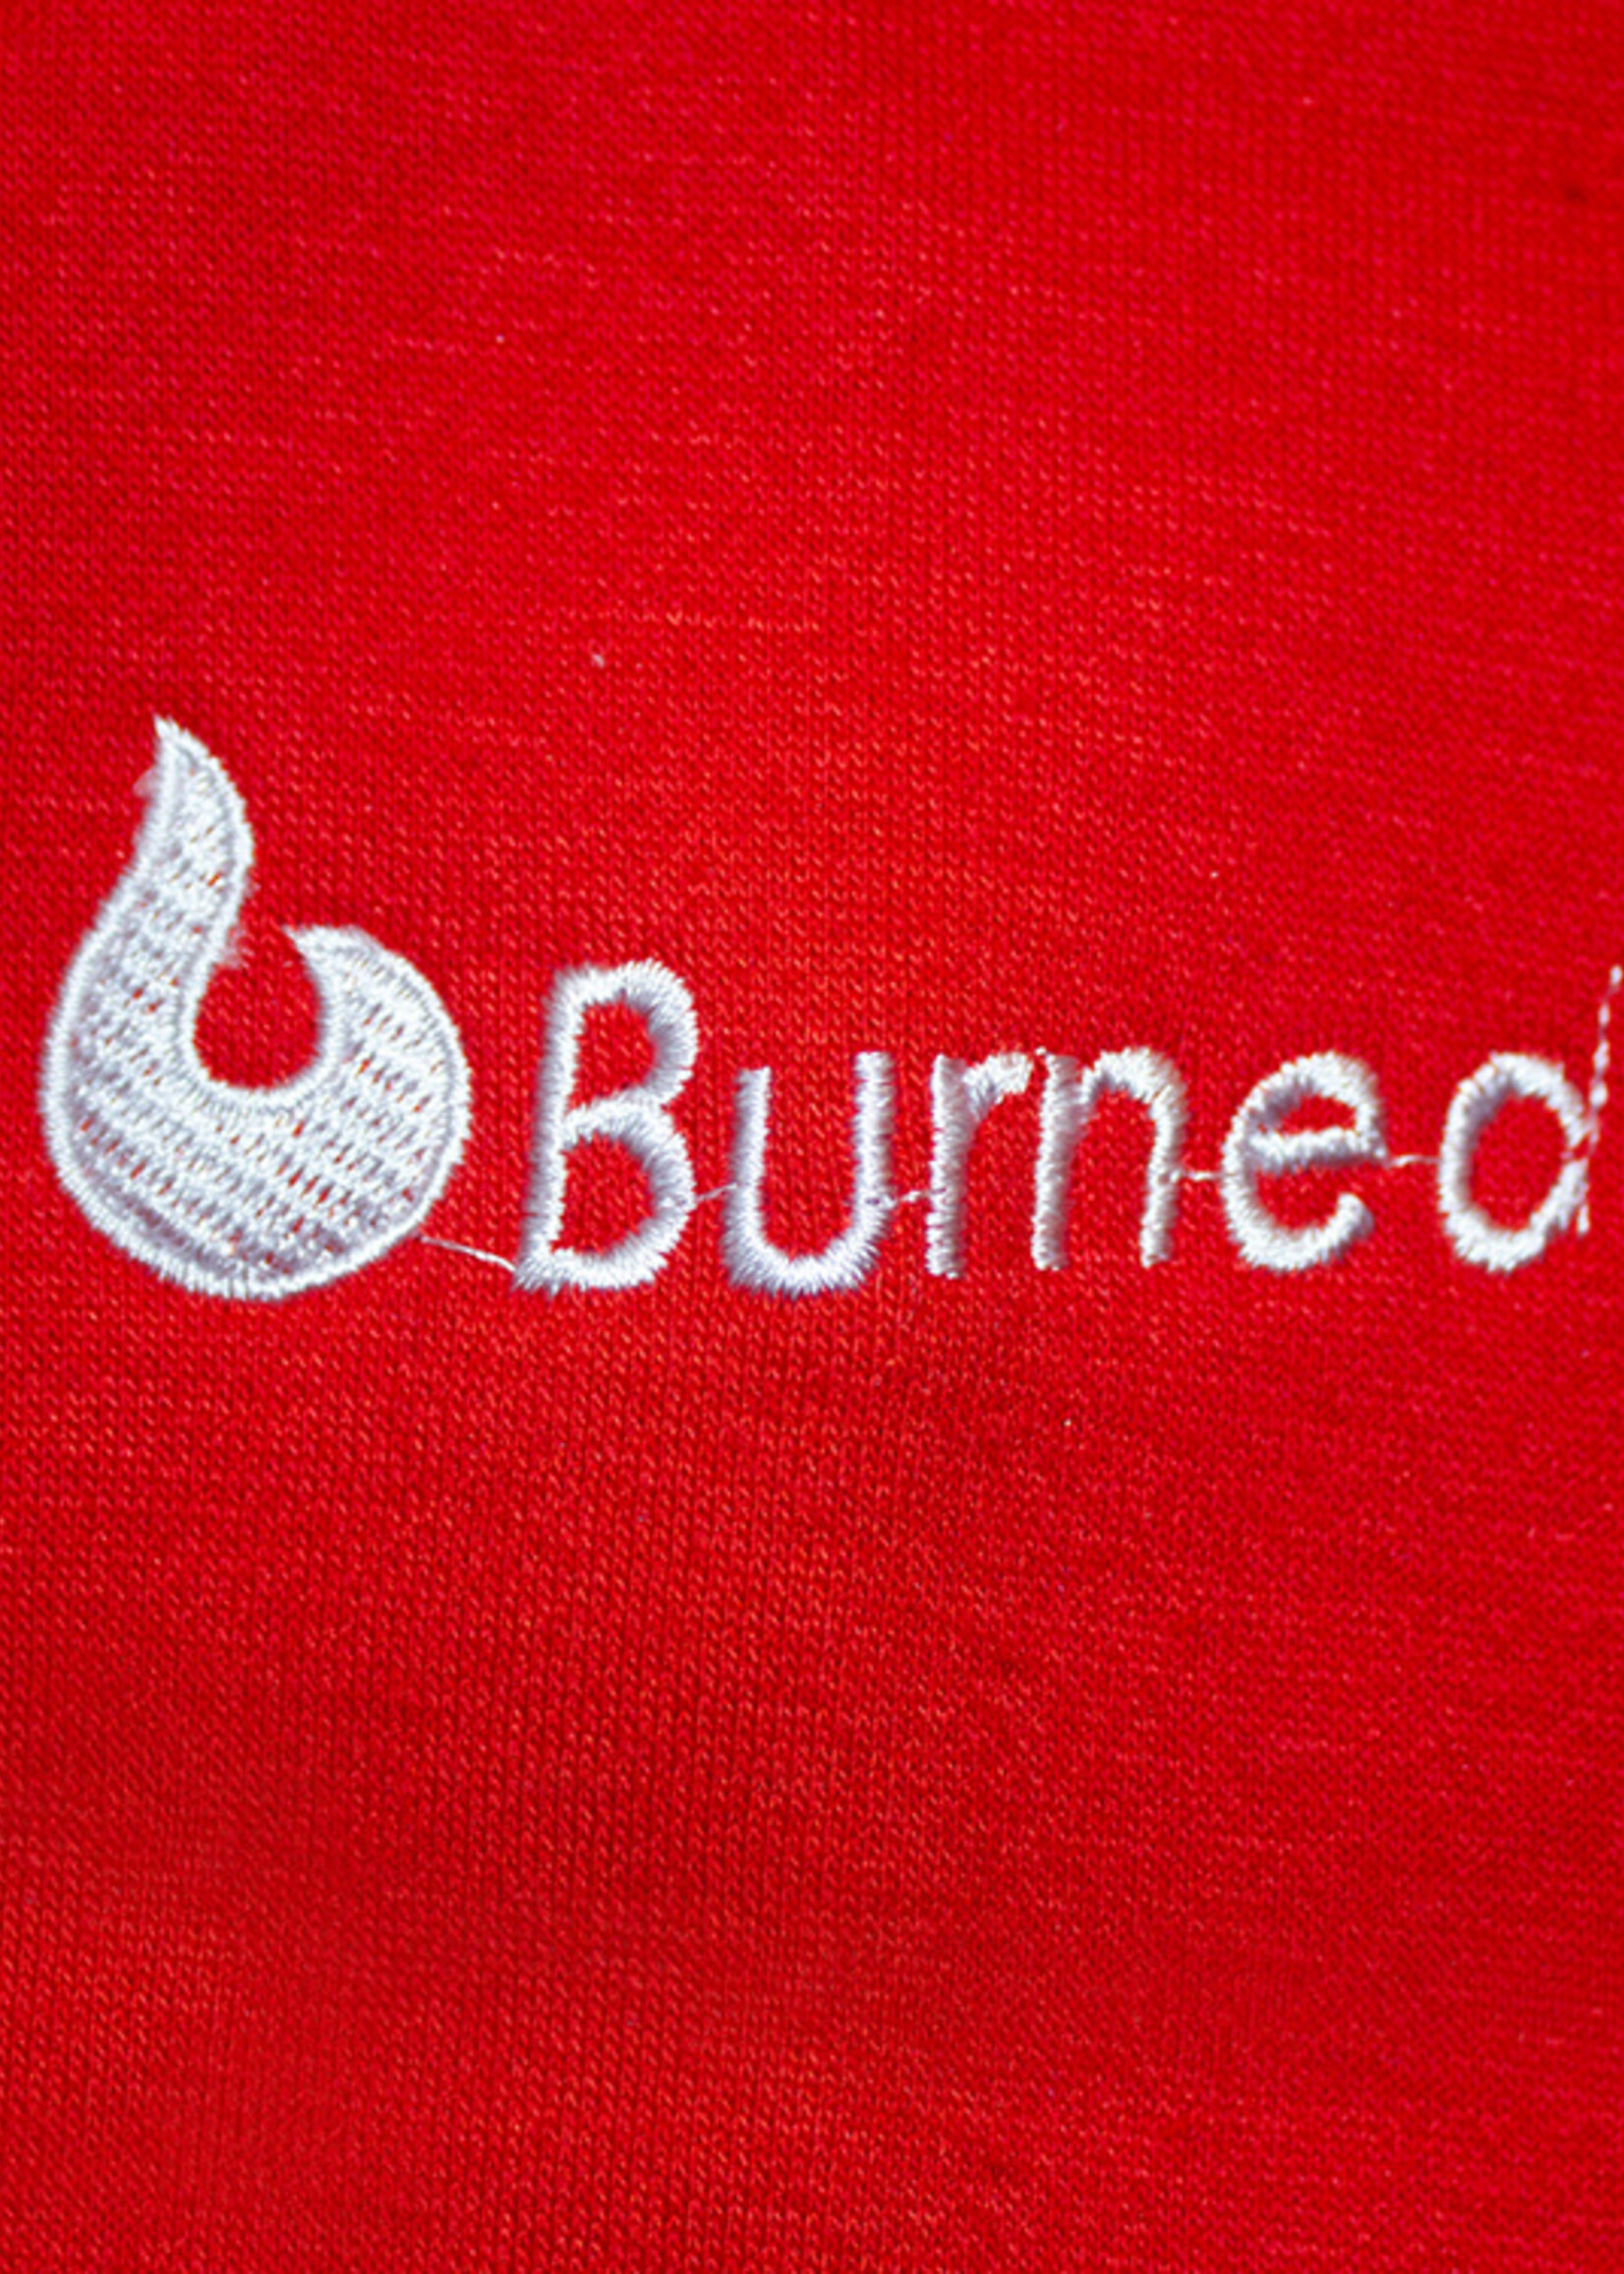 Burned Burned Crewneck Red